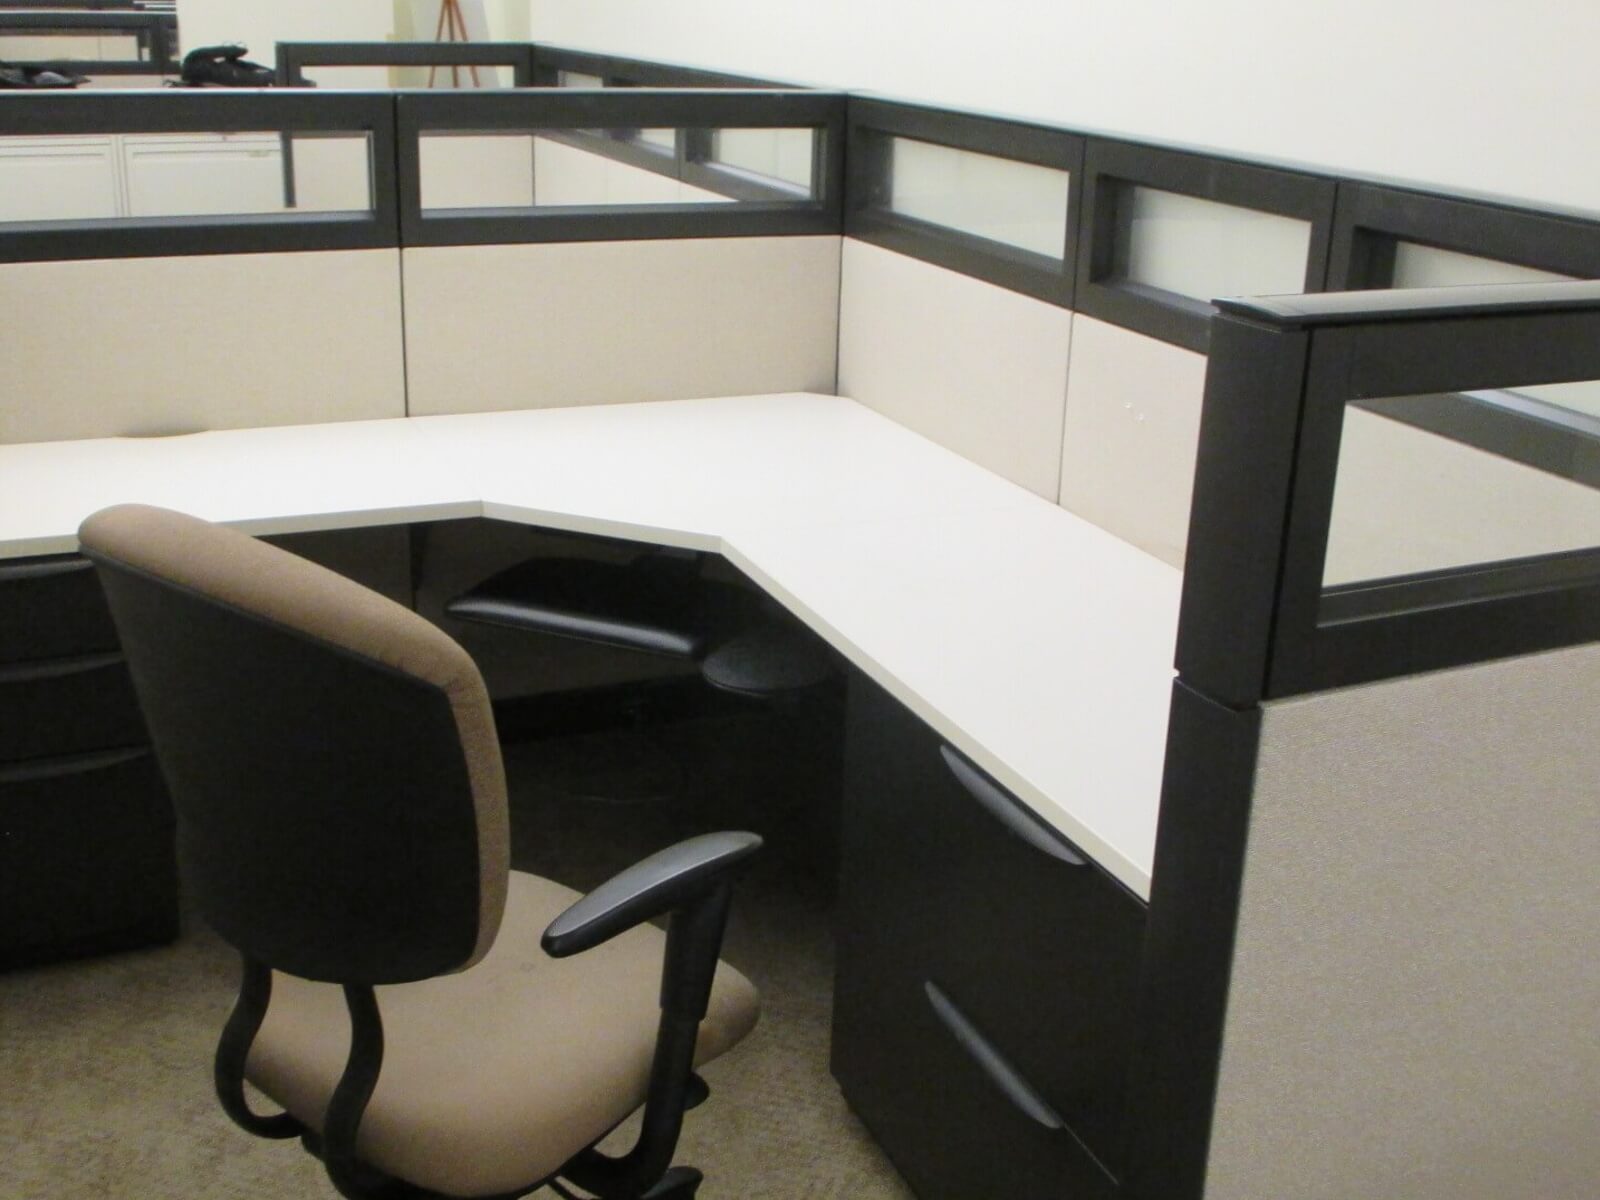 used-cubicles-haworth-premise-050817-ji1a.jpg